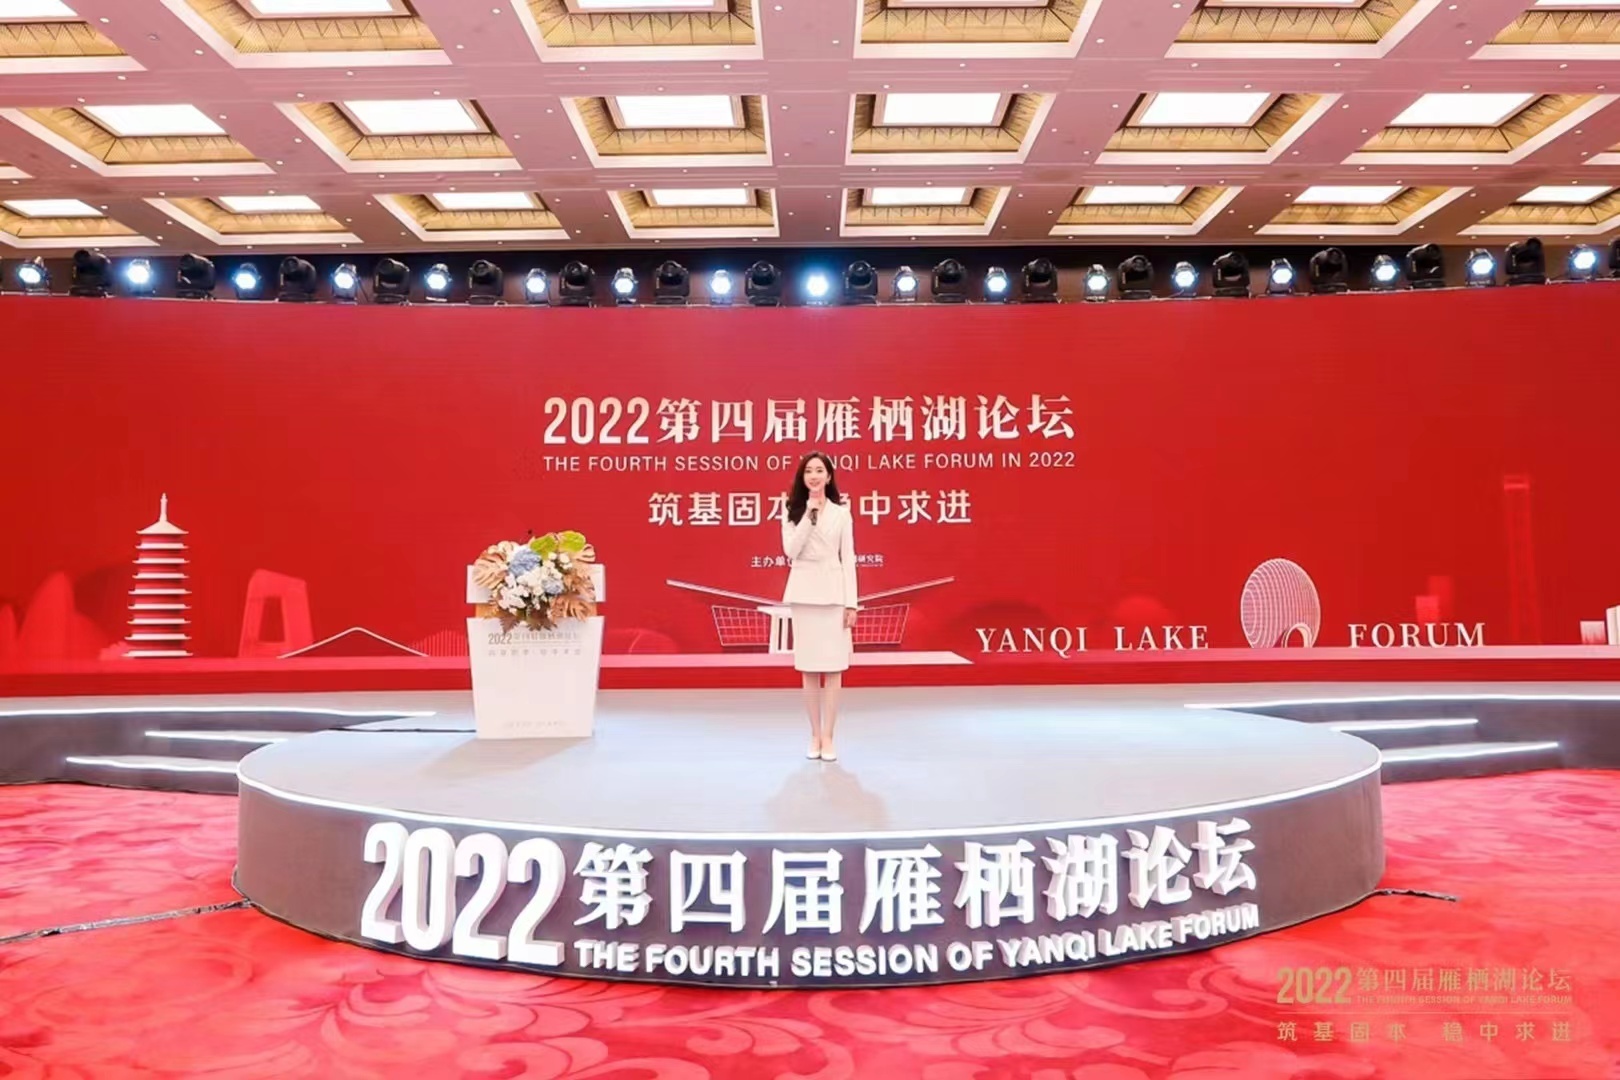 “2022年第四届雁栖湖论坛在京圆满举行